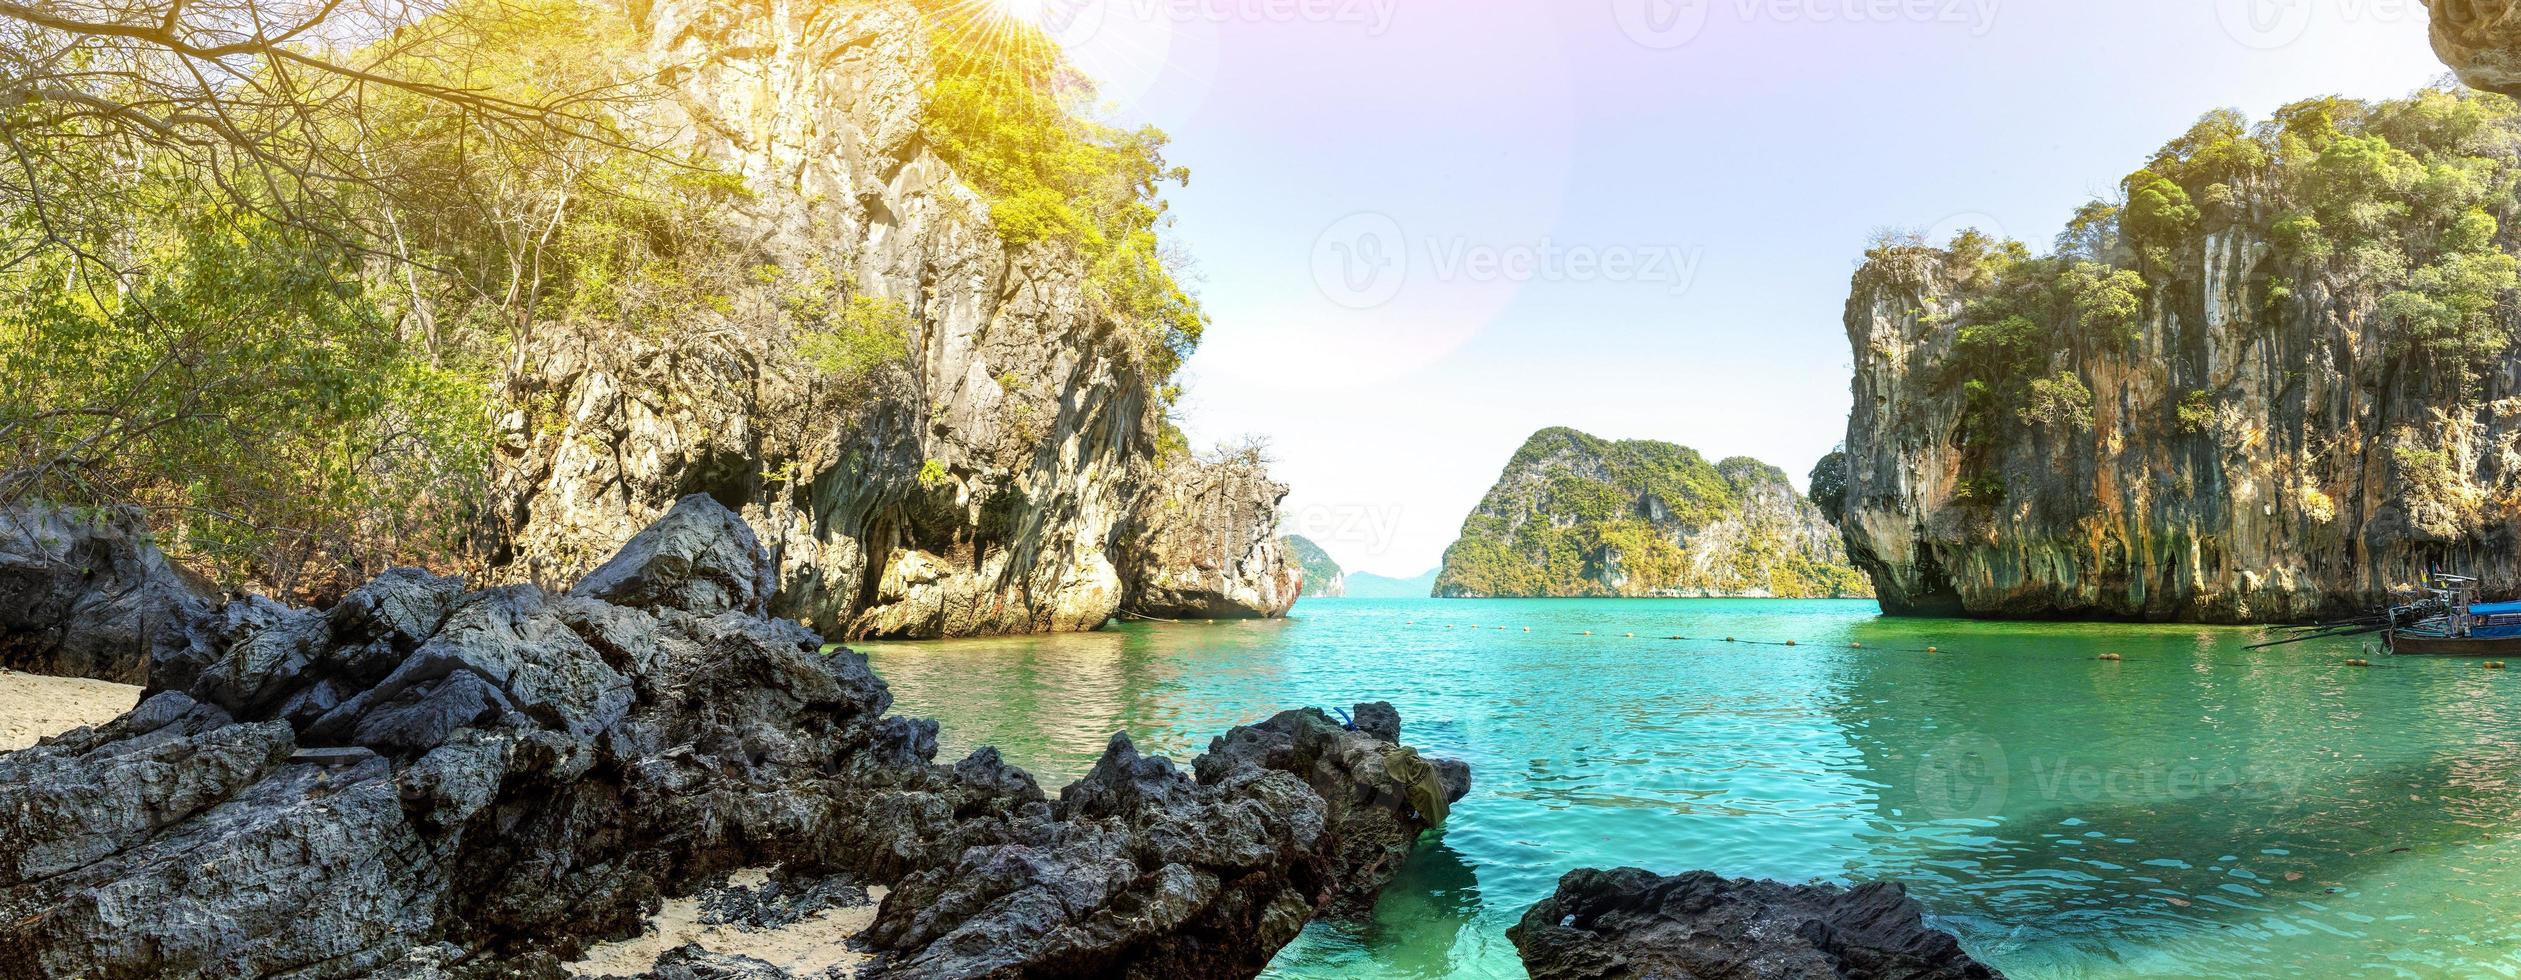 acqua blu a lao lading island, provincia di krabi, thailandia-paradiso foto